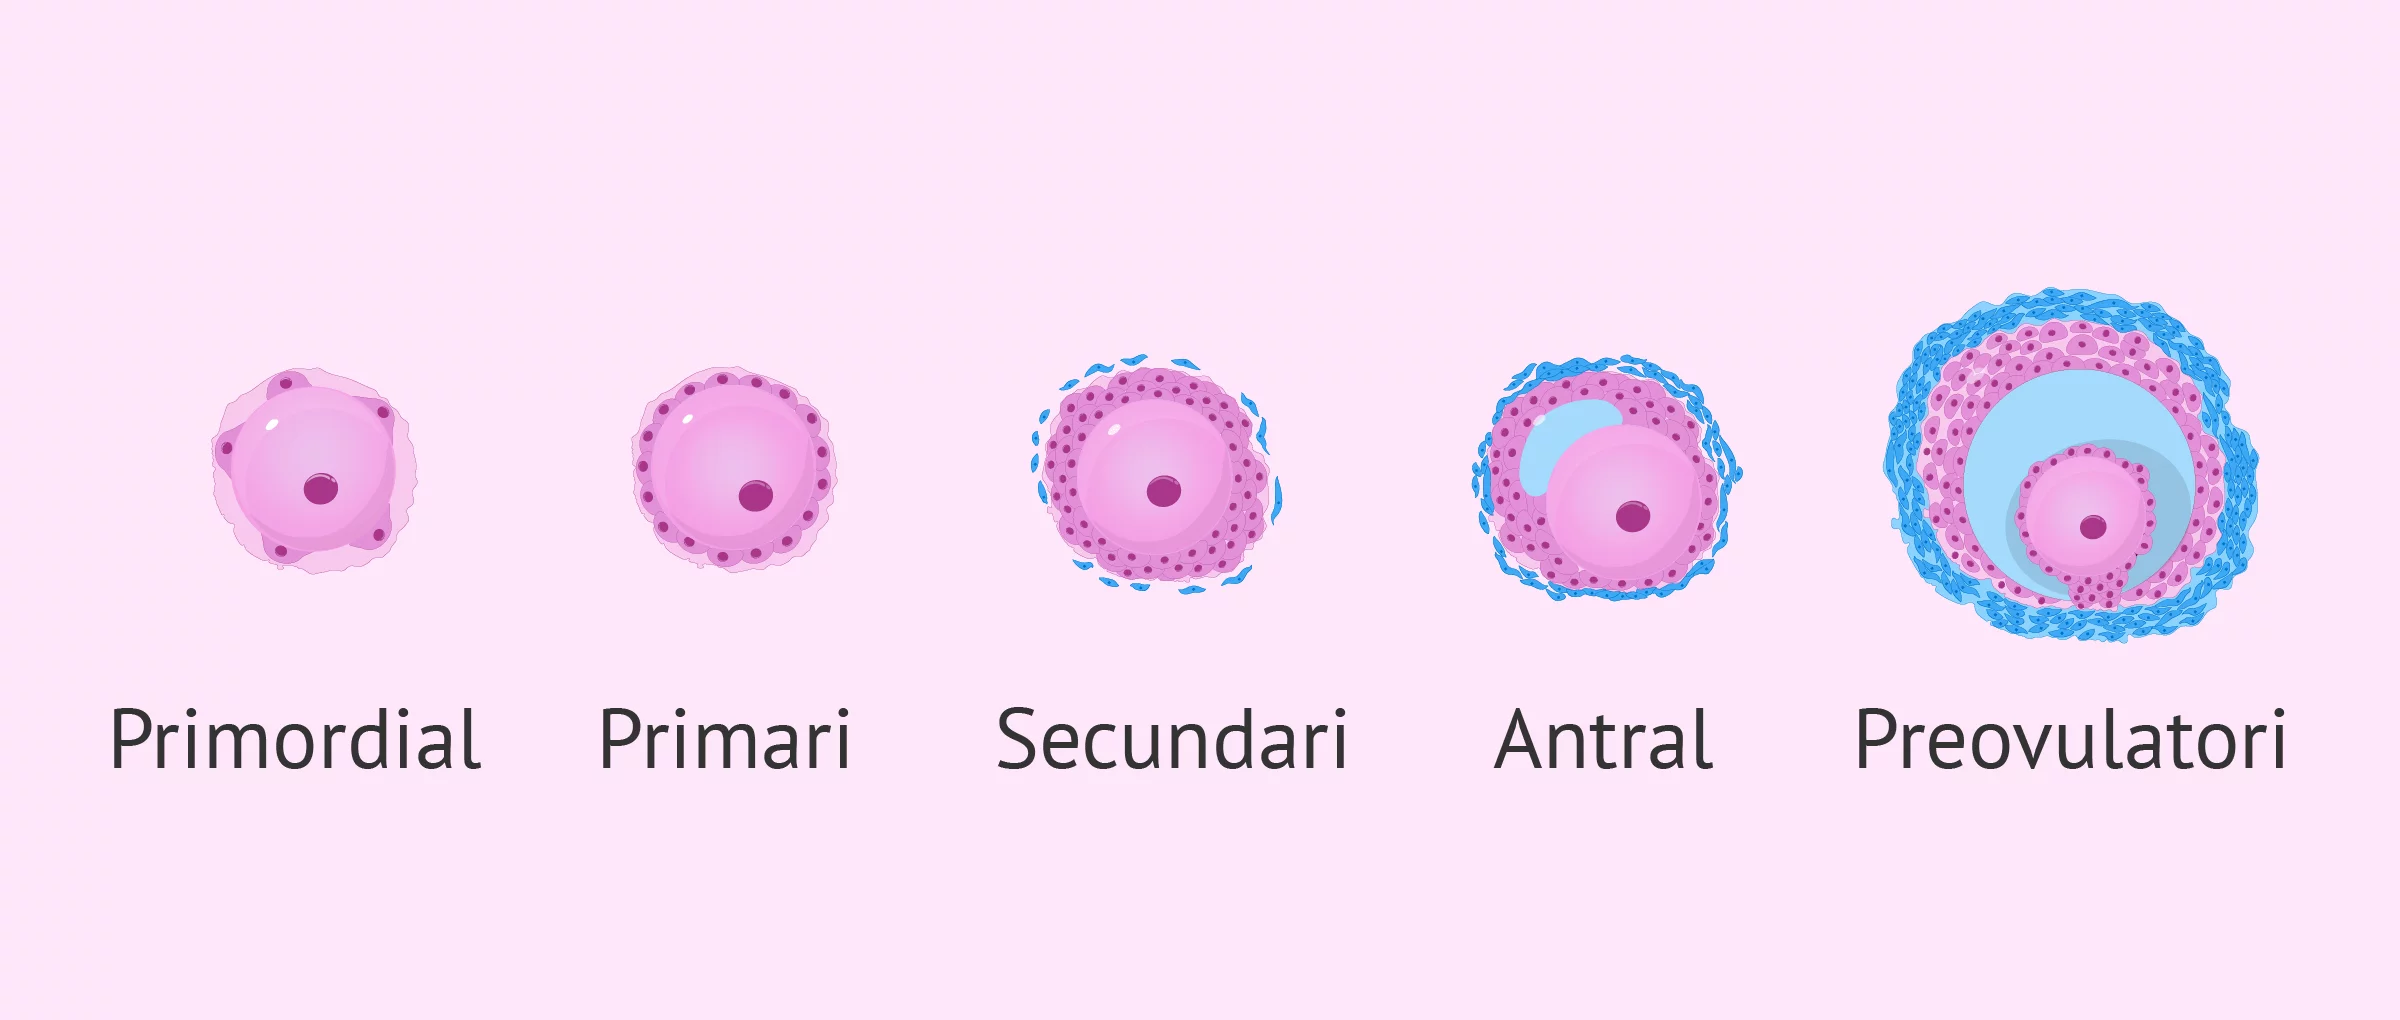 Desenvolupament dels fol·licles de l'ovari